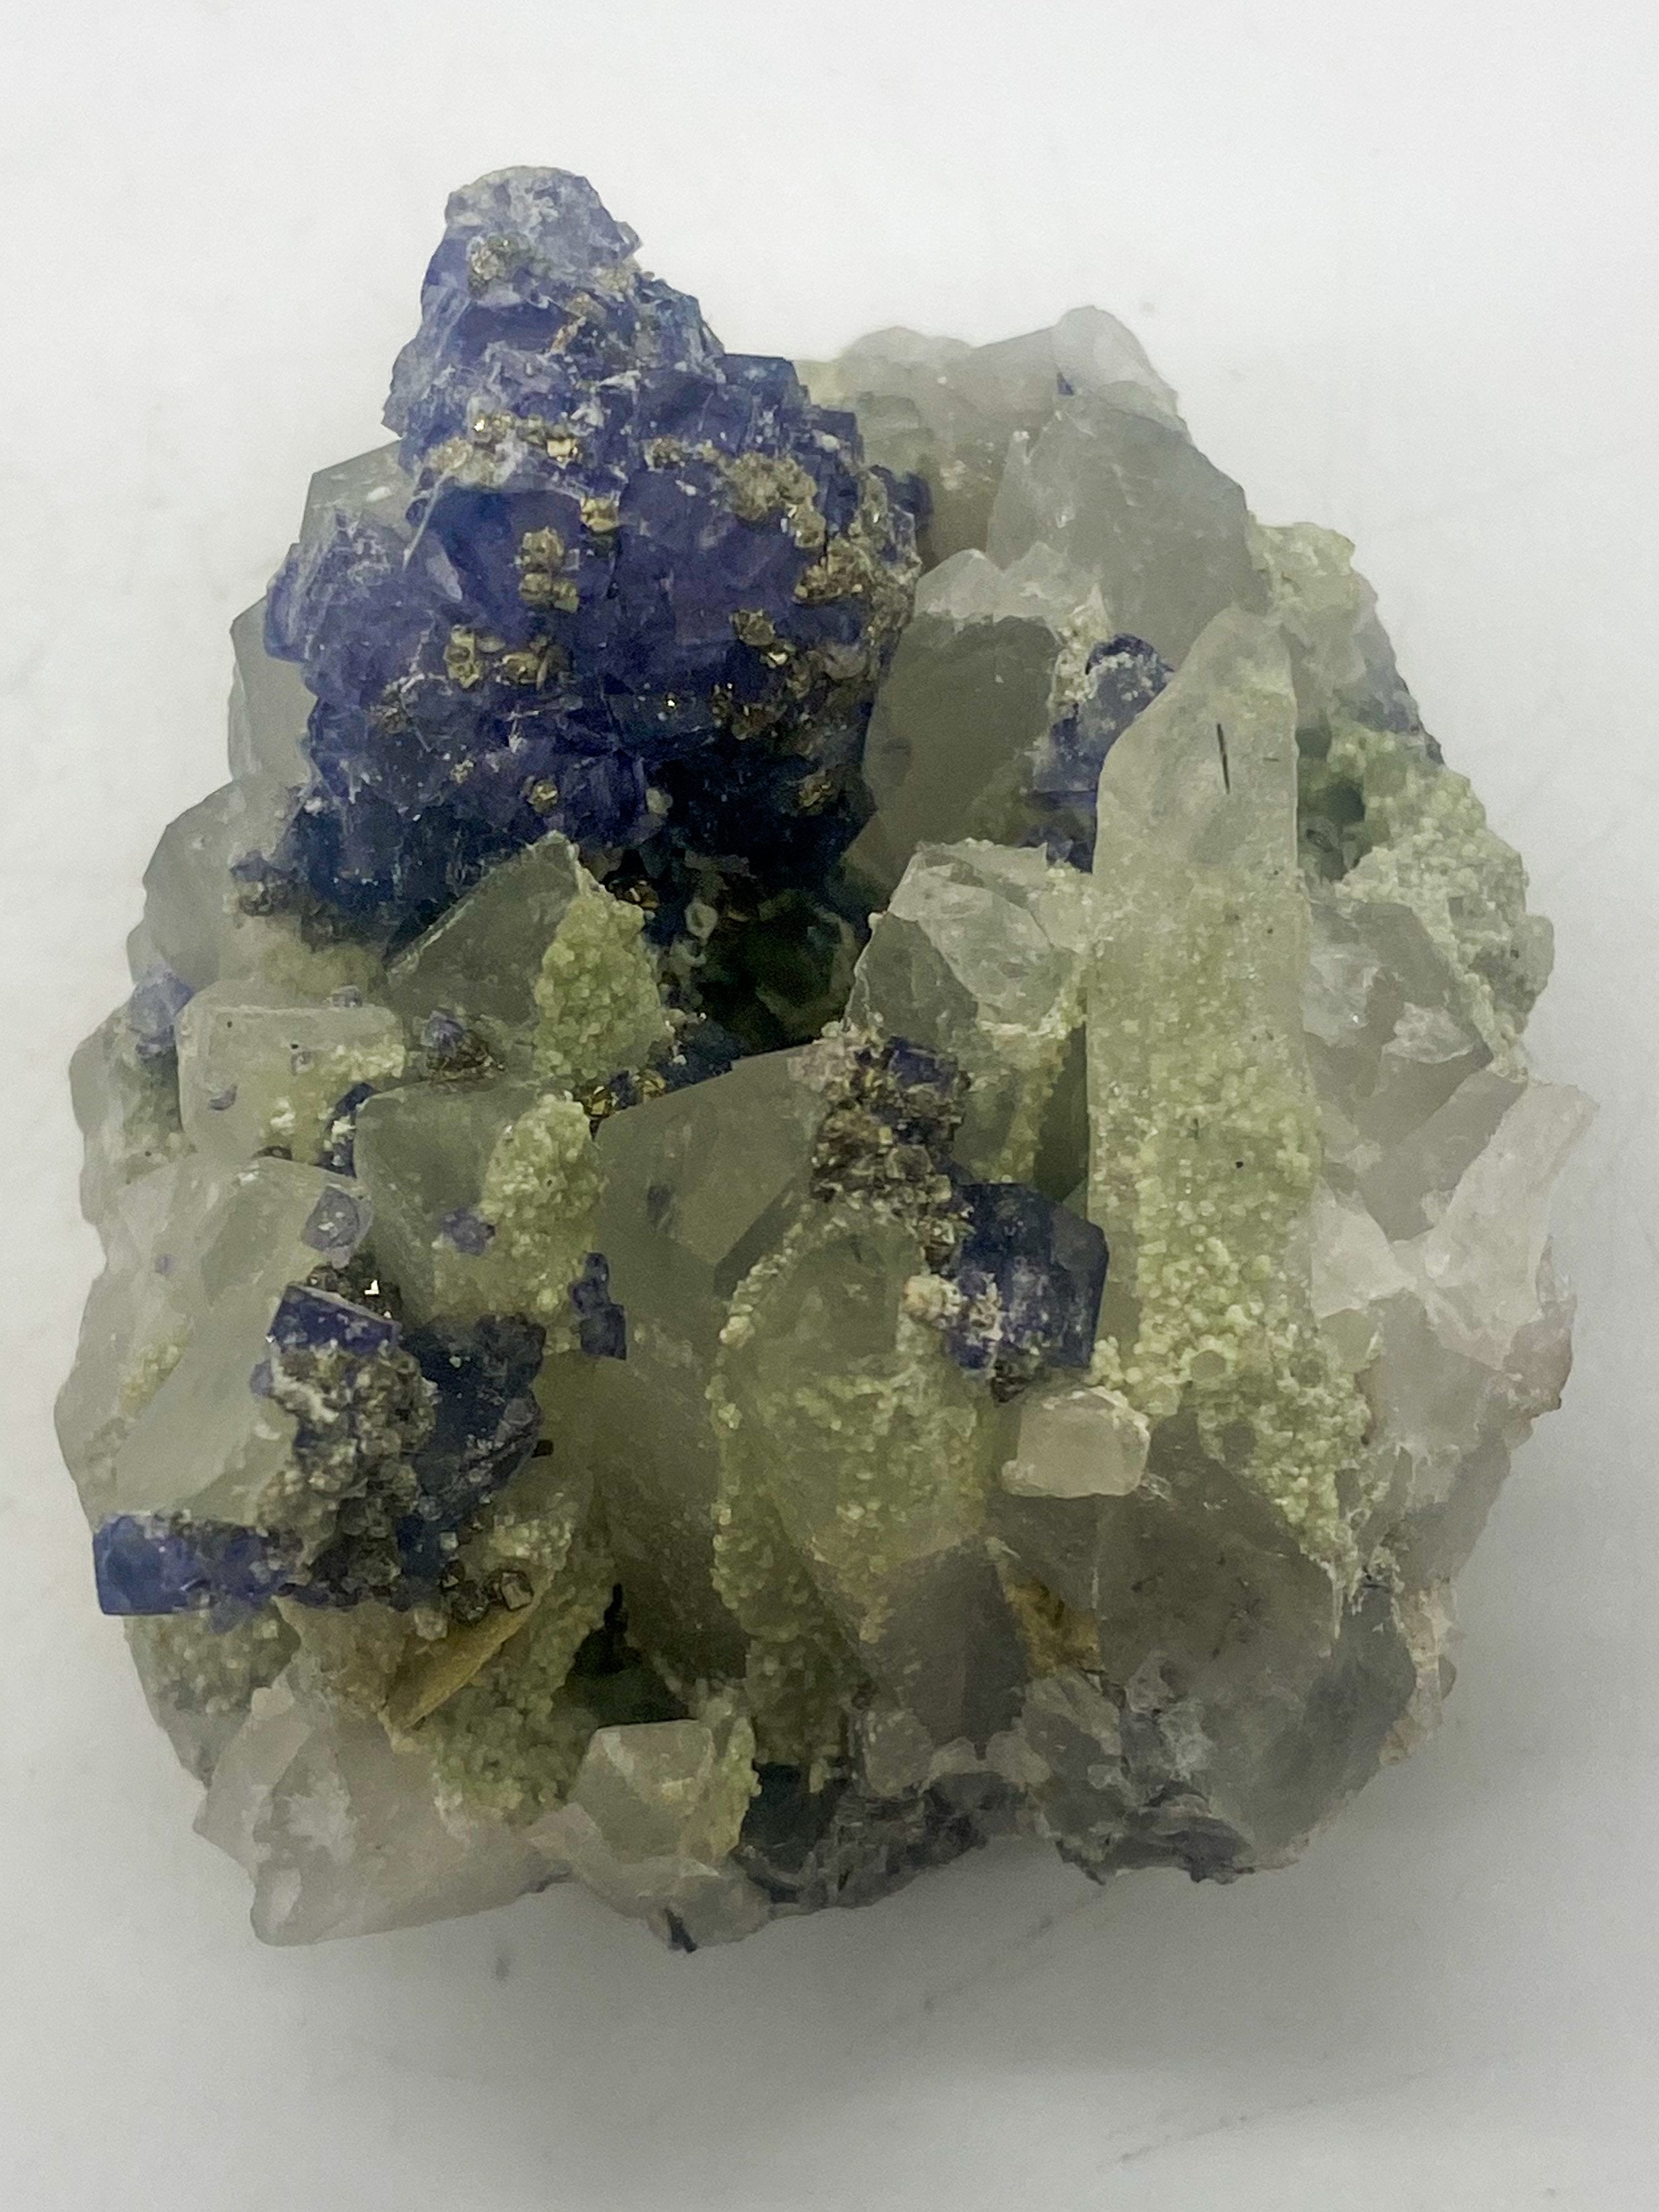 Purple Tanzanite on Quartz with Muscovite and Pyrite